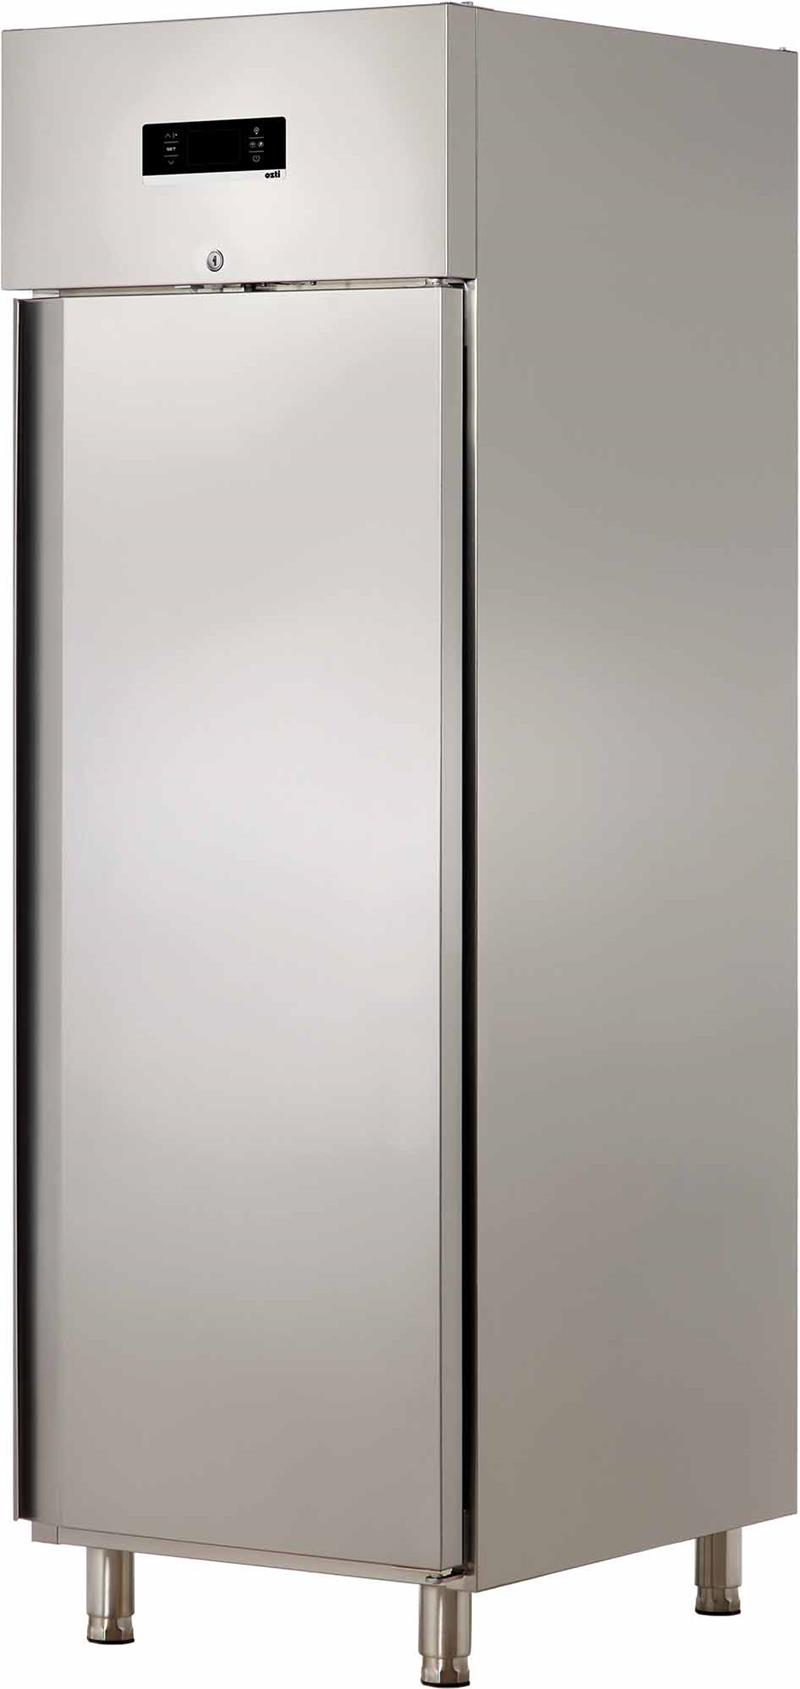 Stainless Steel Door Refrigerator (Vertical)